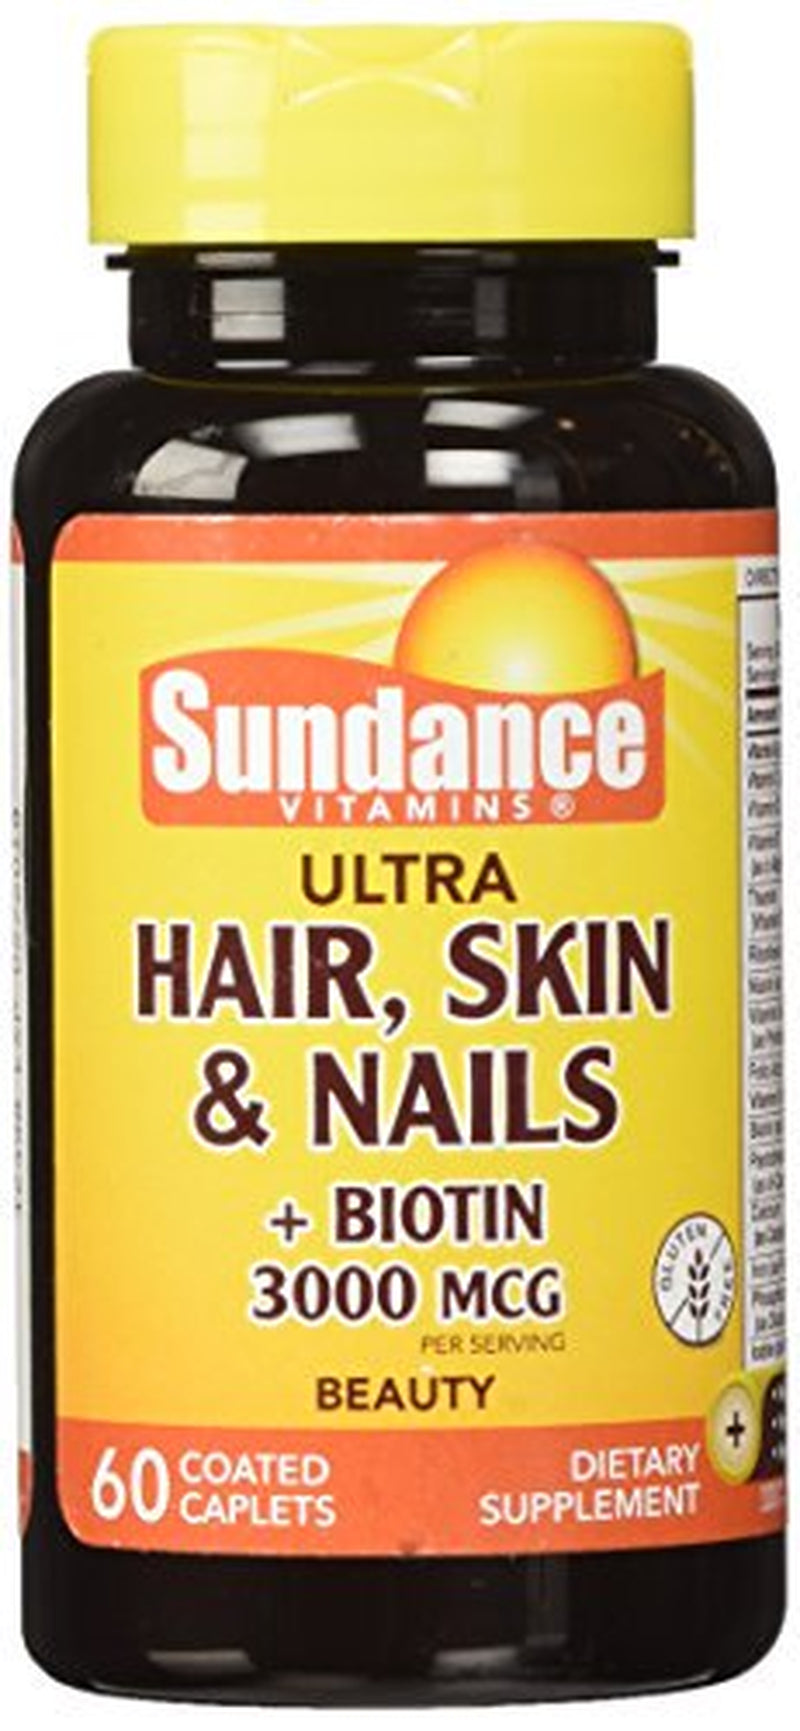 Sundance Hair Skin Nails plus Biotin Caplets, 60 Count